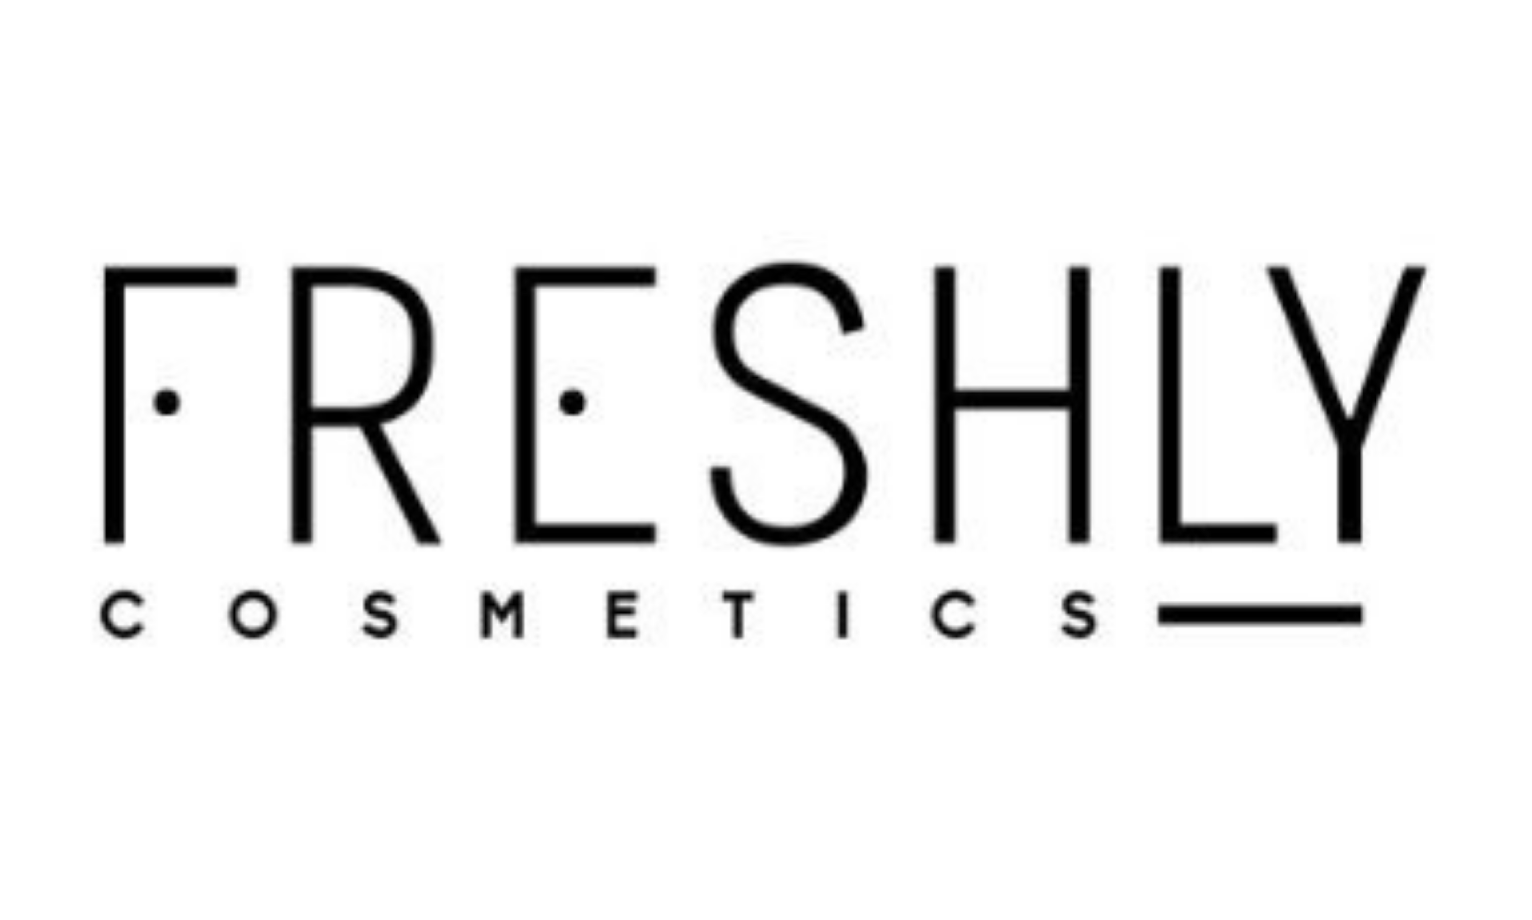 Logo Freshly